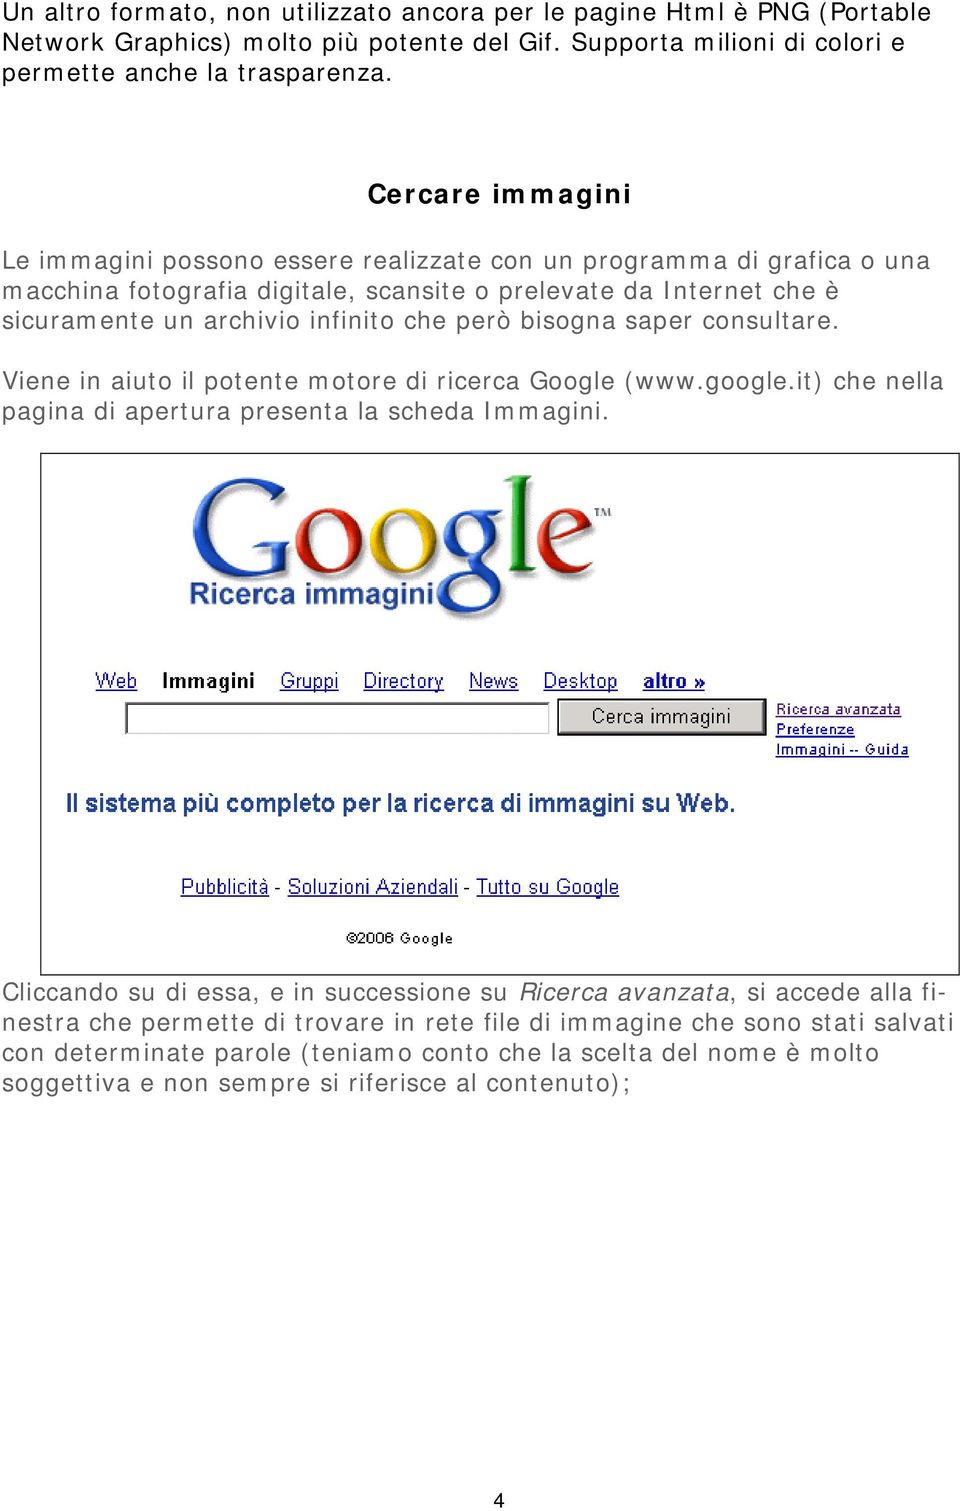 bisogna saper consultare. Viene in aiuto il potente motore di ricerca Google (www.google.it) che nella pagina di apertura presenta la scheda Immagini.